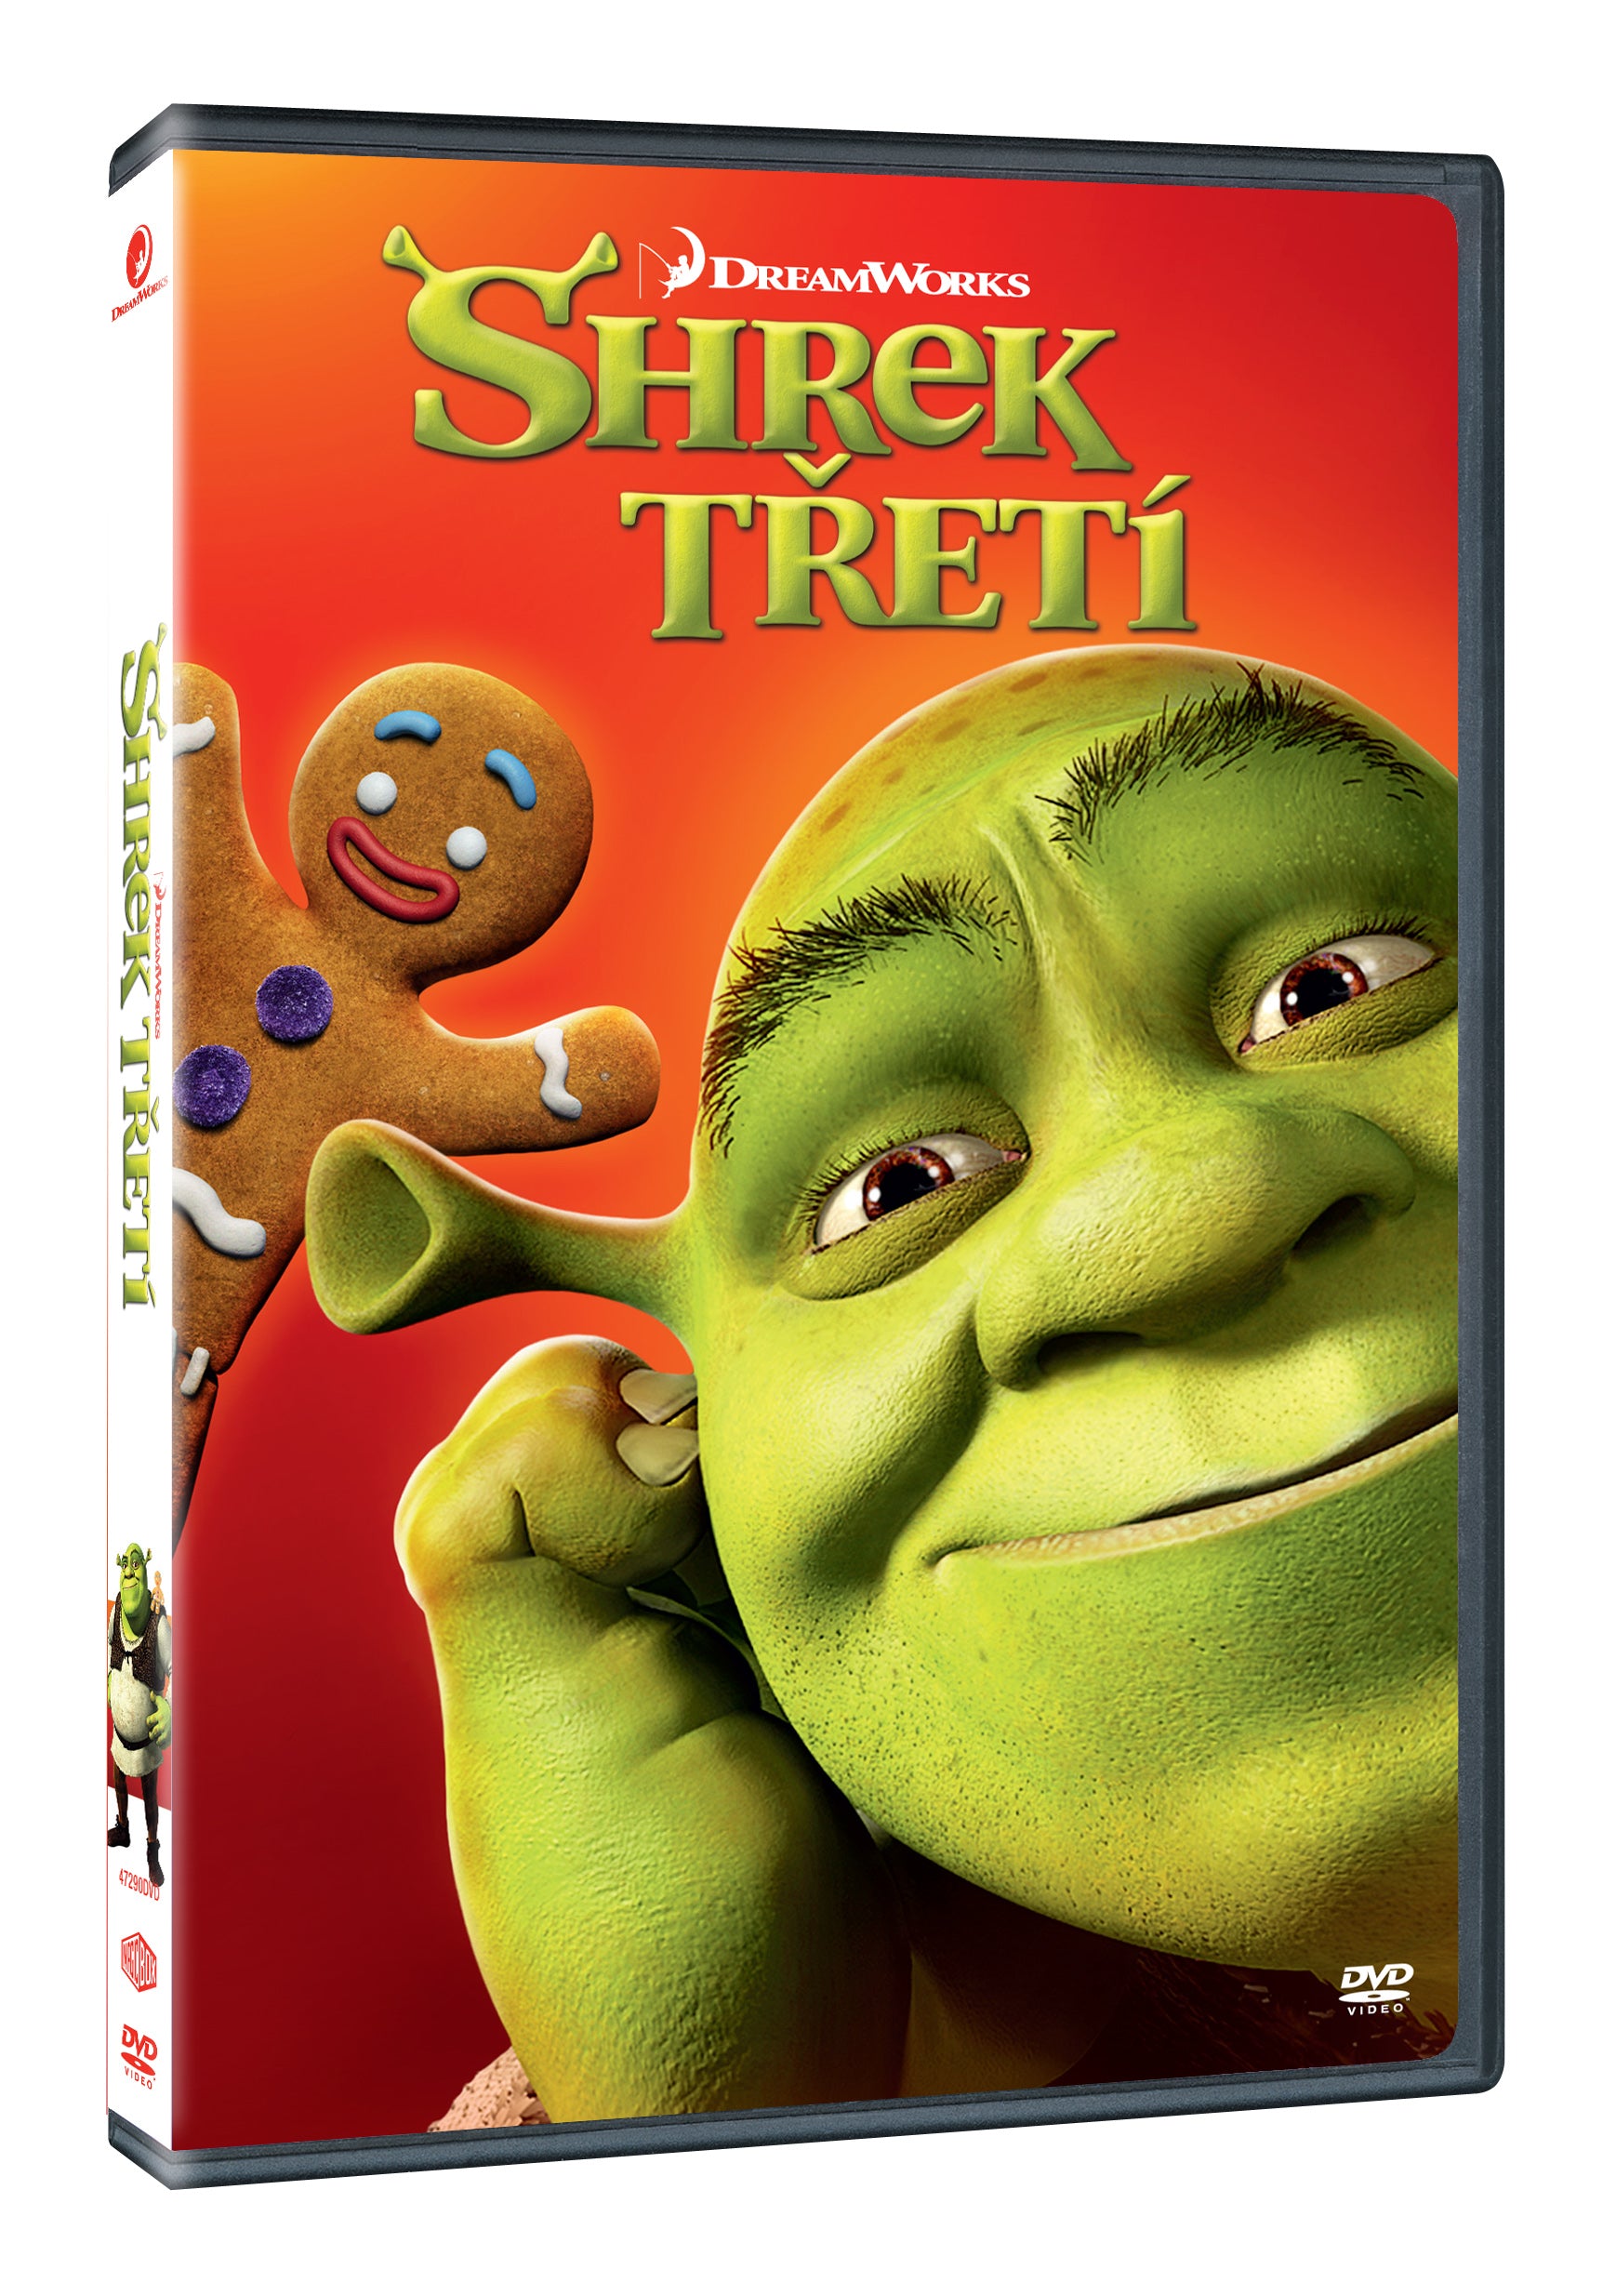 Shrek Treti DVD / Shrek der Dritte